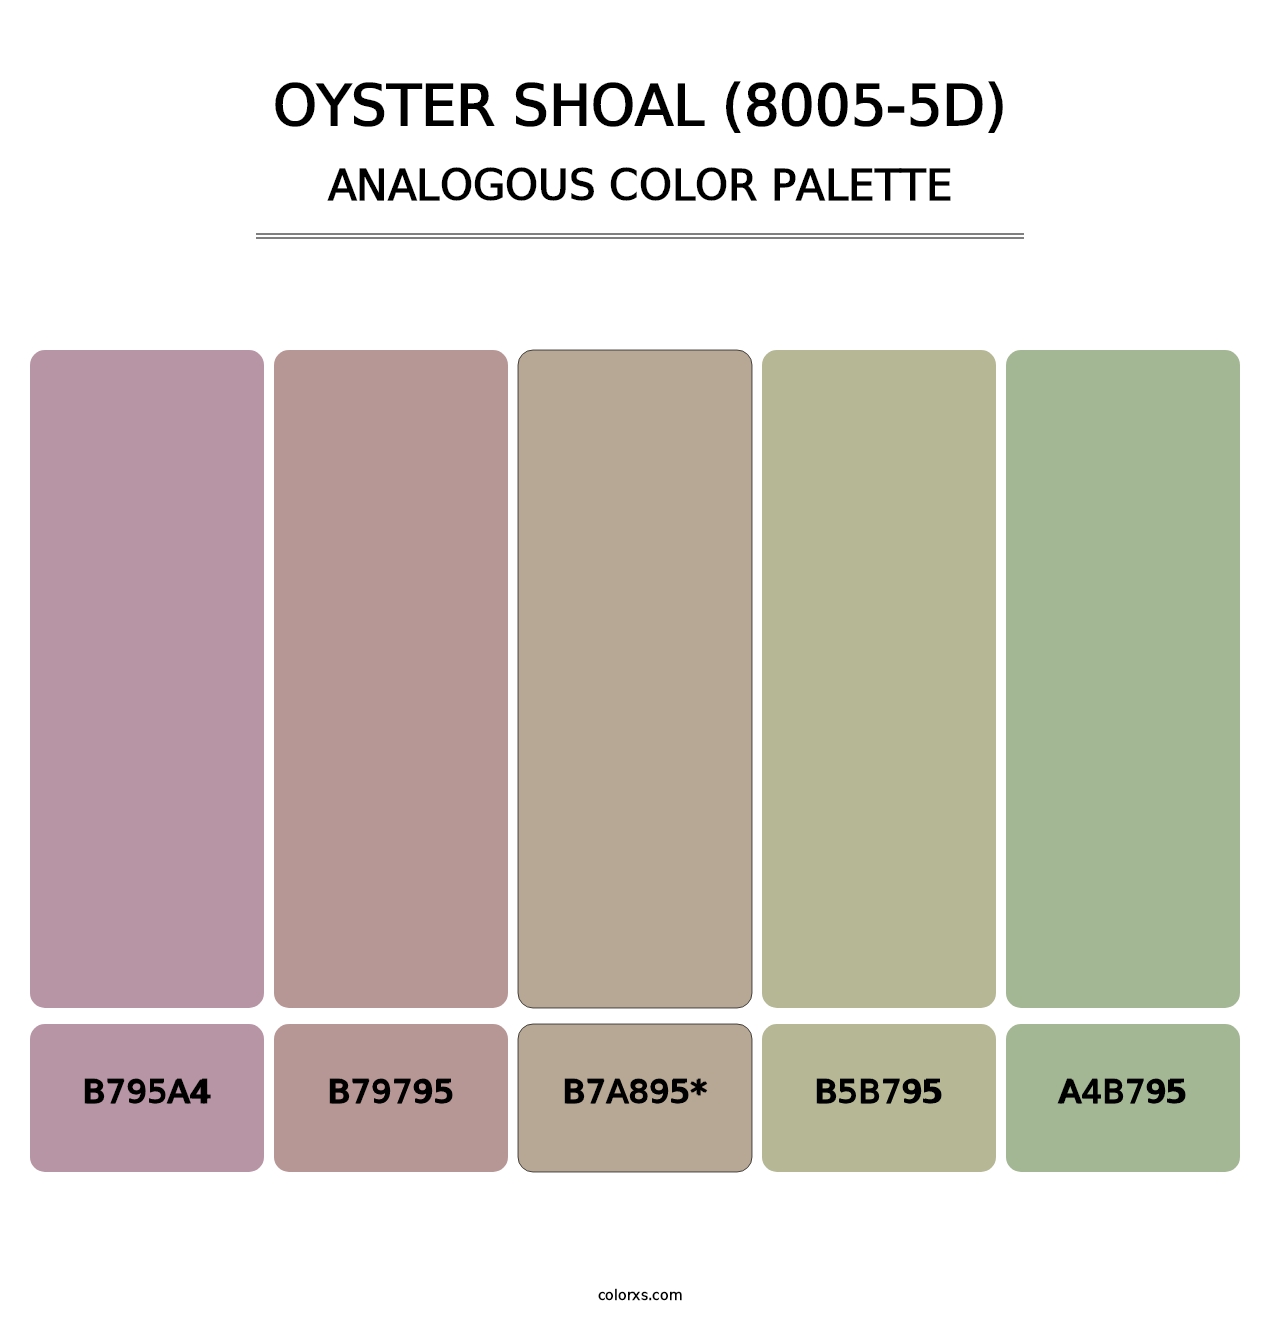 Oyster Shoal (8005-5D) - Analogous Color Palette